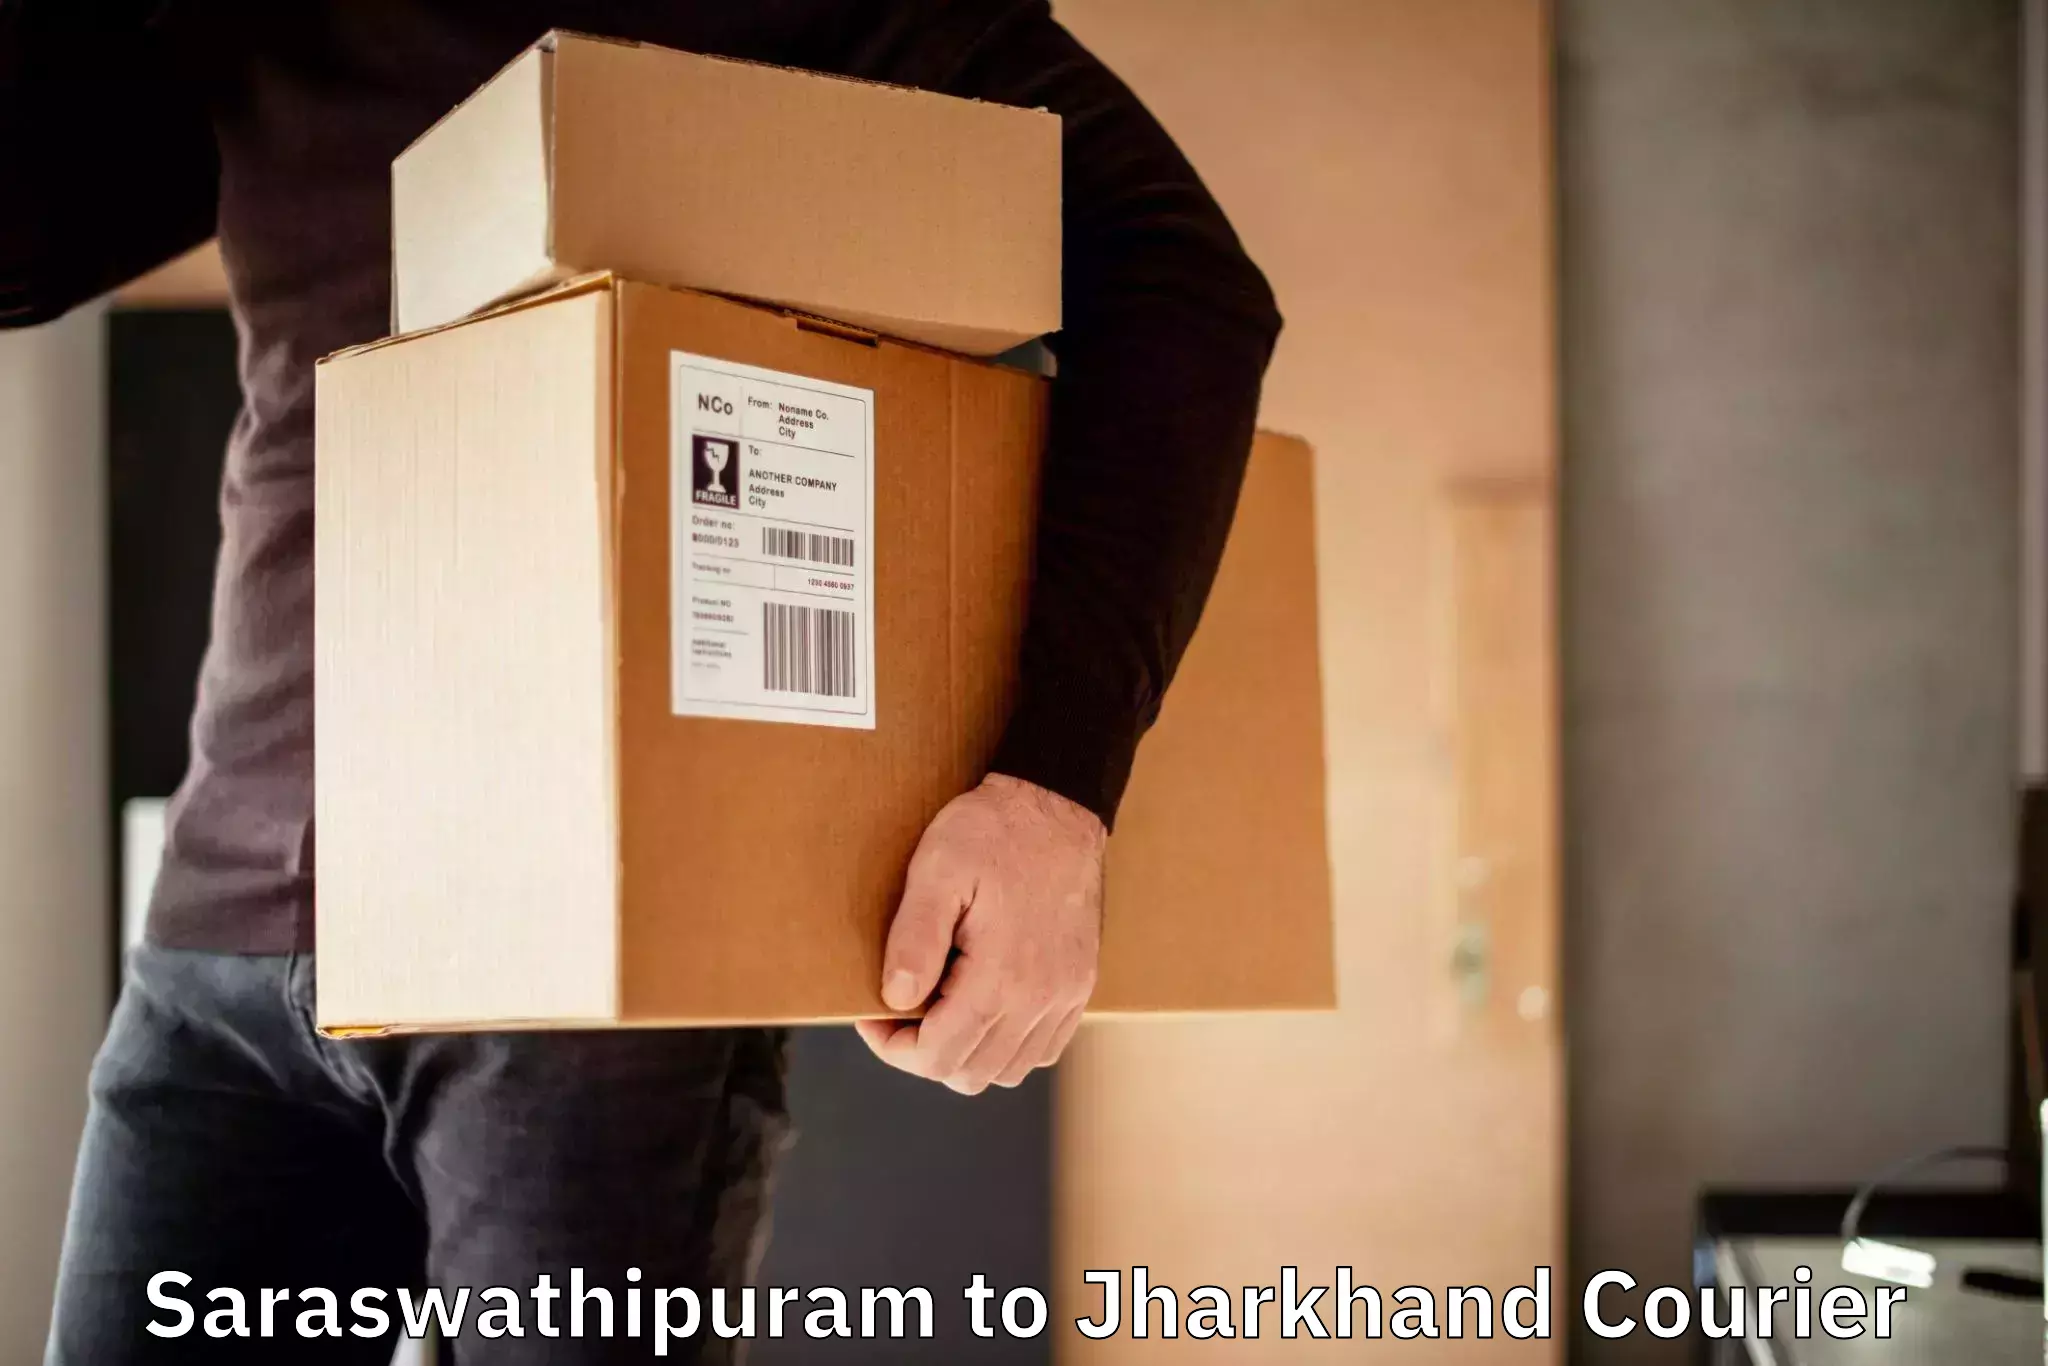 Reliable logistics providers Saraswathipuram to Chandankiyari